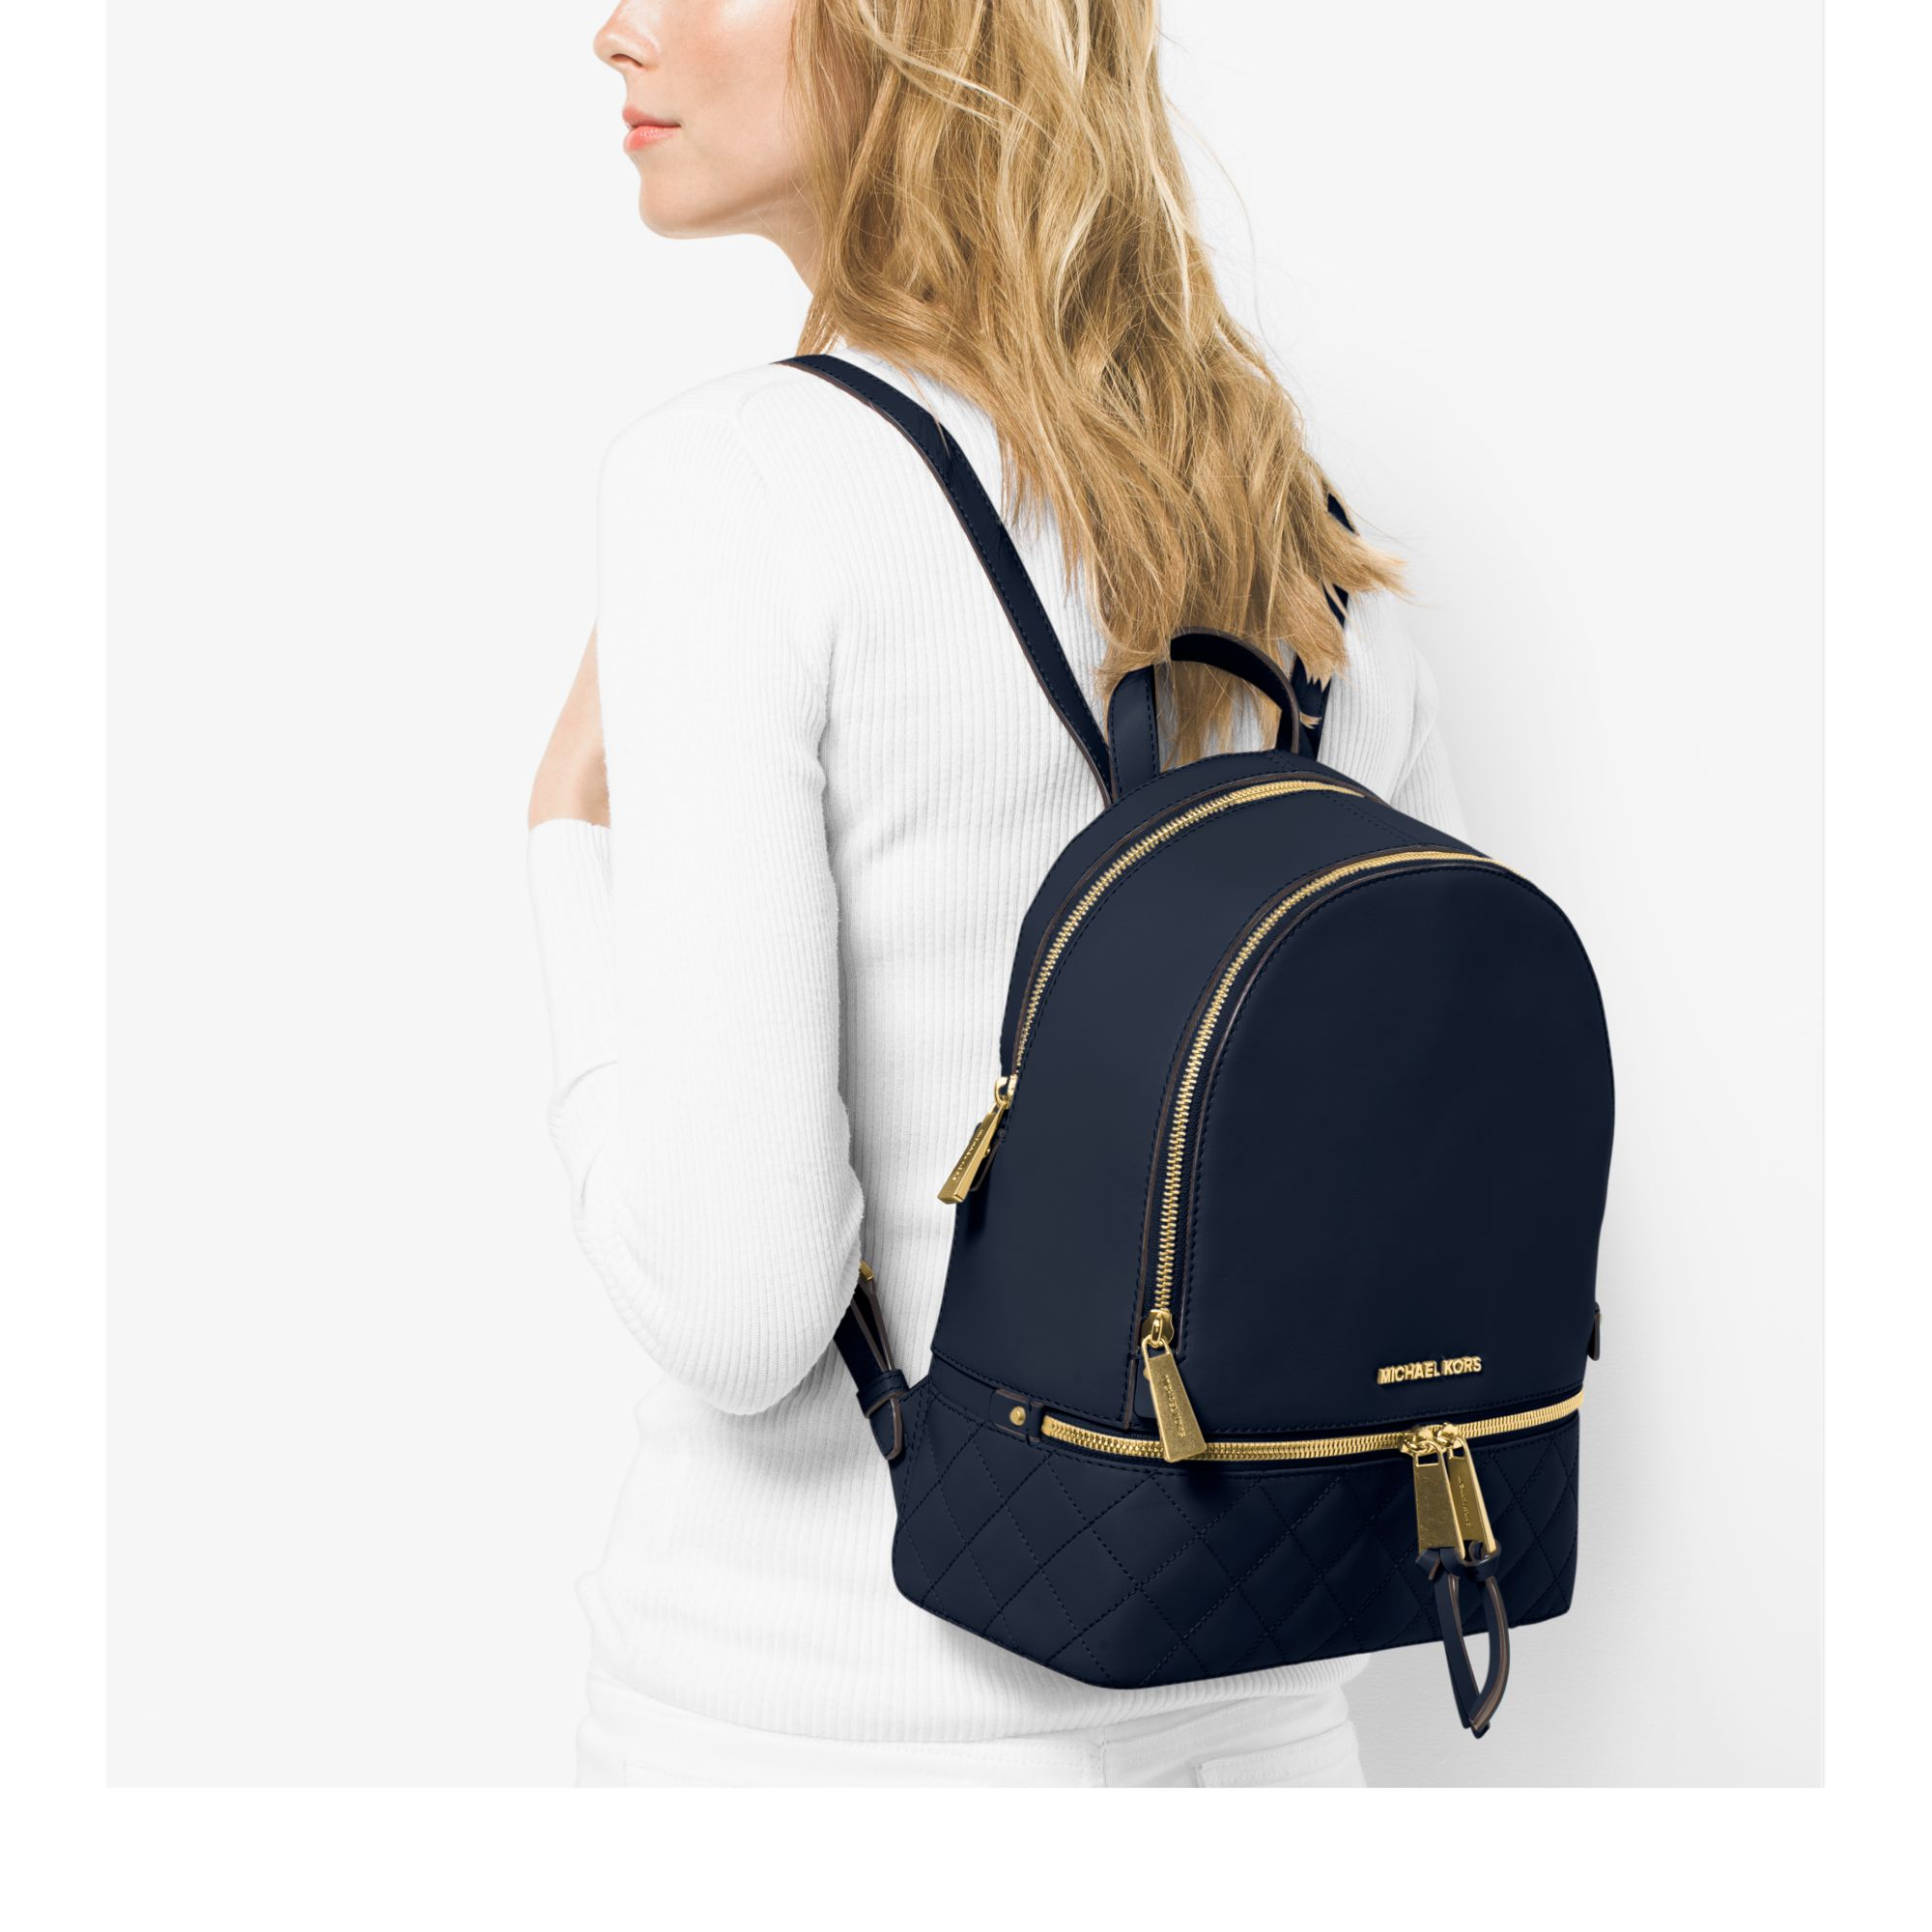 michael kors navy blue backpack